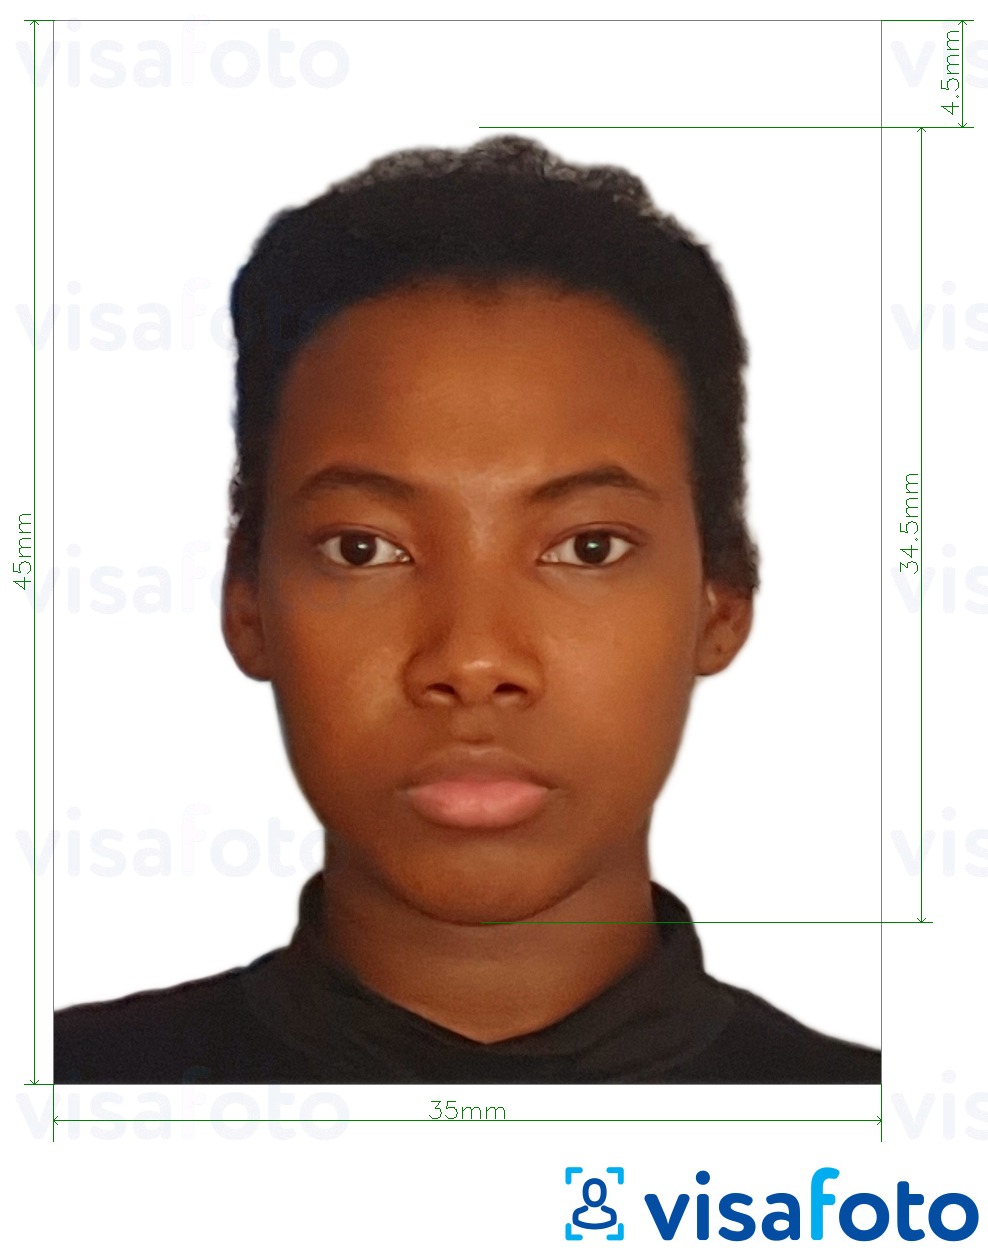 肯尼亚身份证35x45毫米 的标准尺寸照片示例